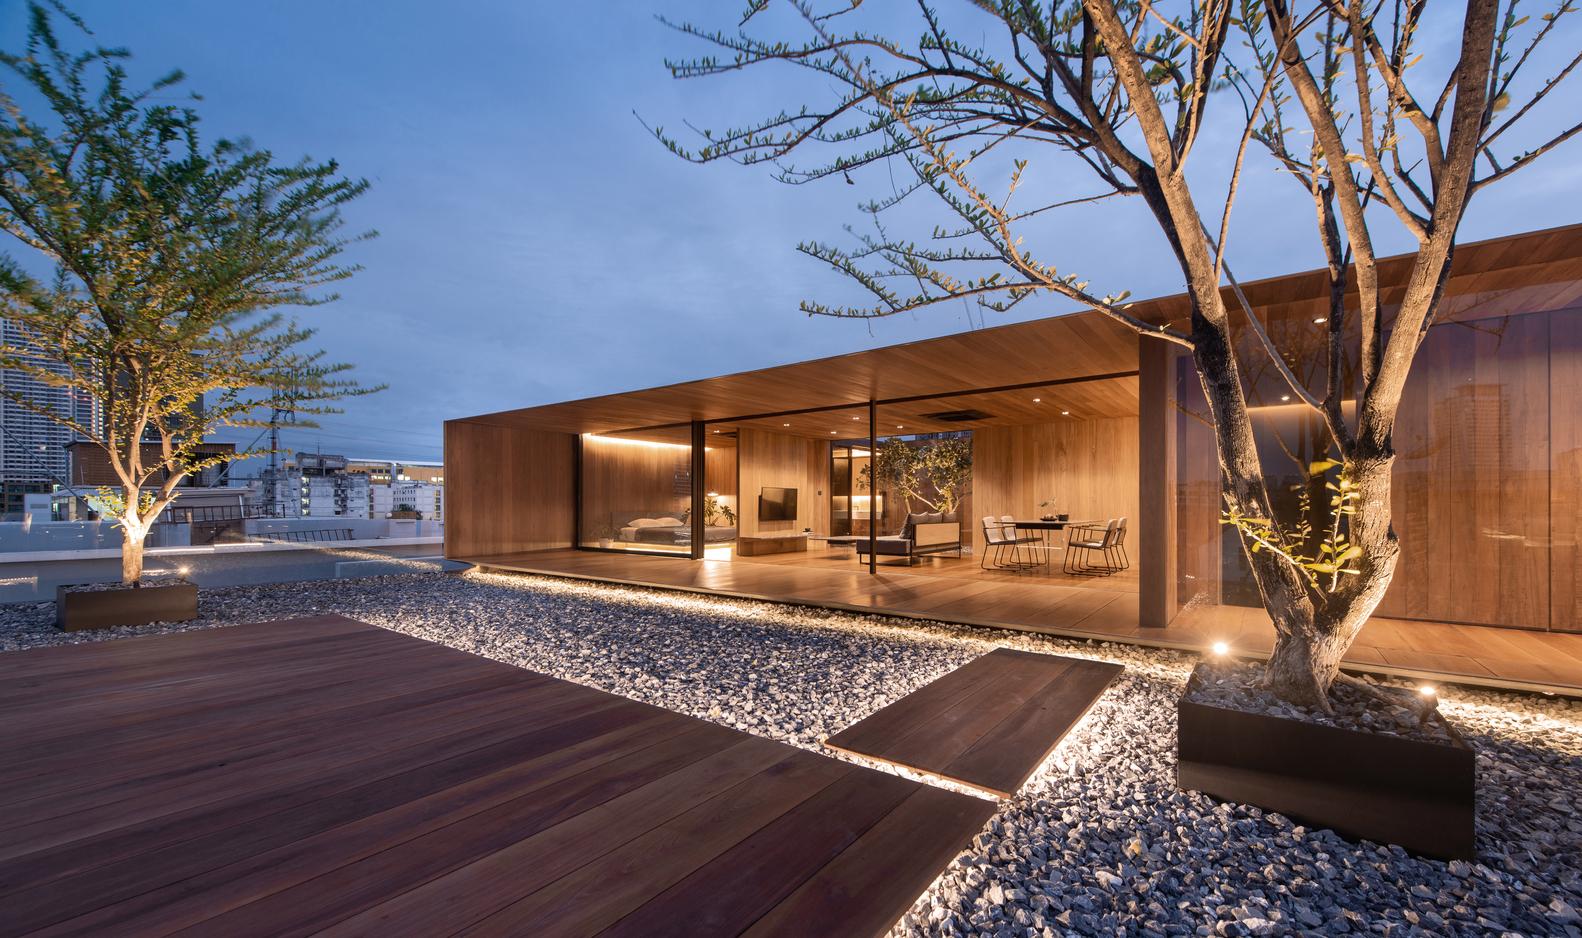 【泰國無邊框住宅】把建築從形狀中解放出來 展現天然環境魅力